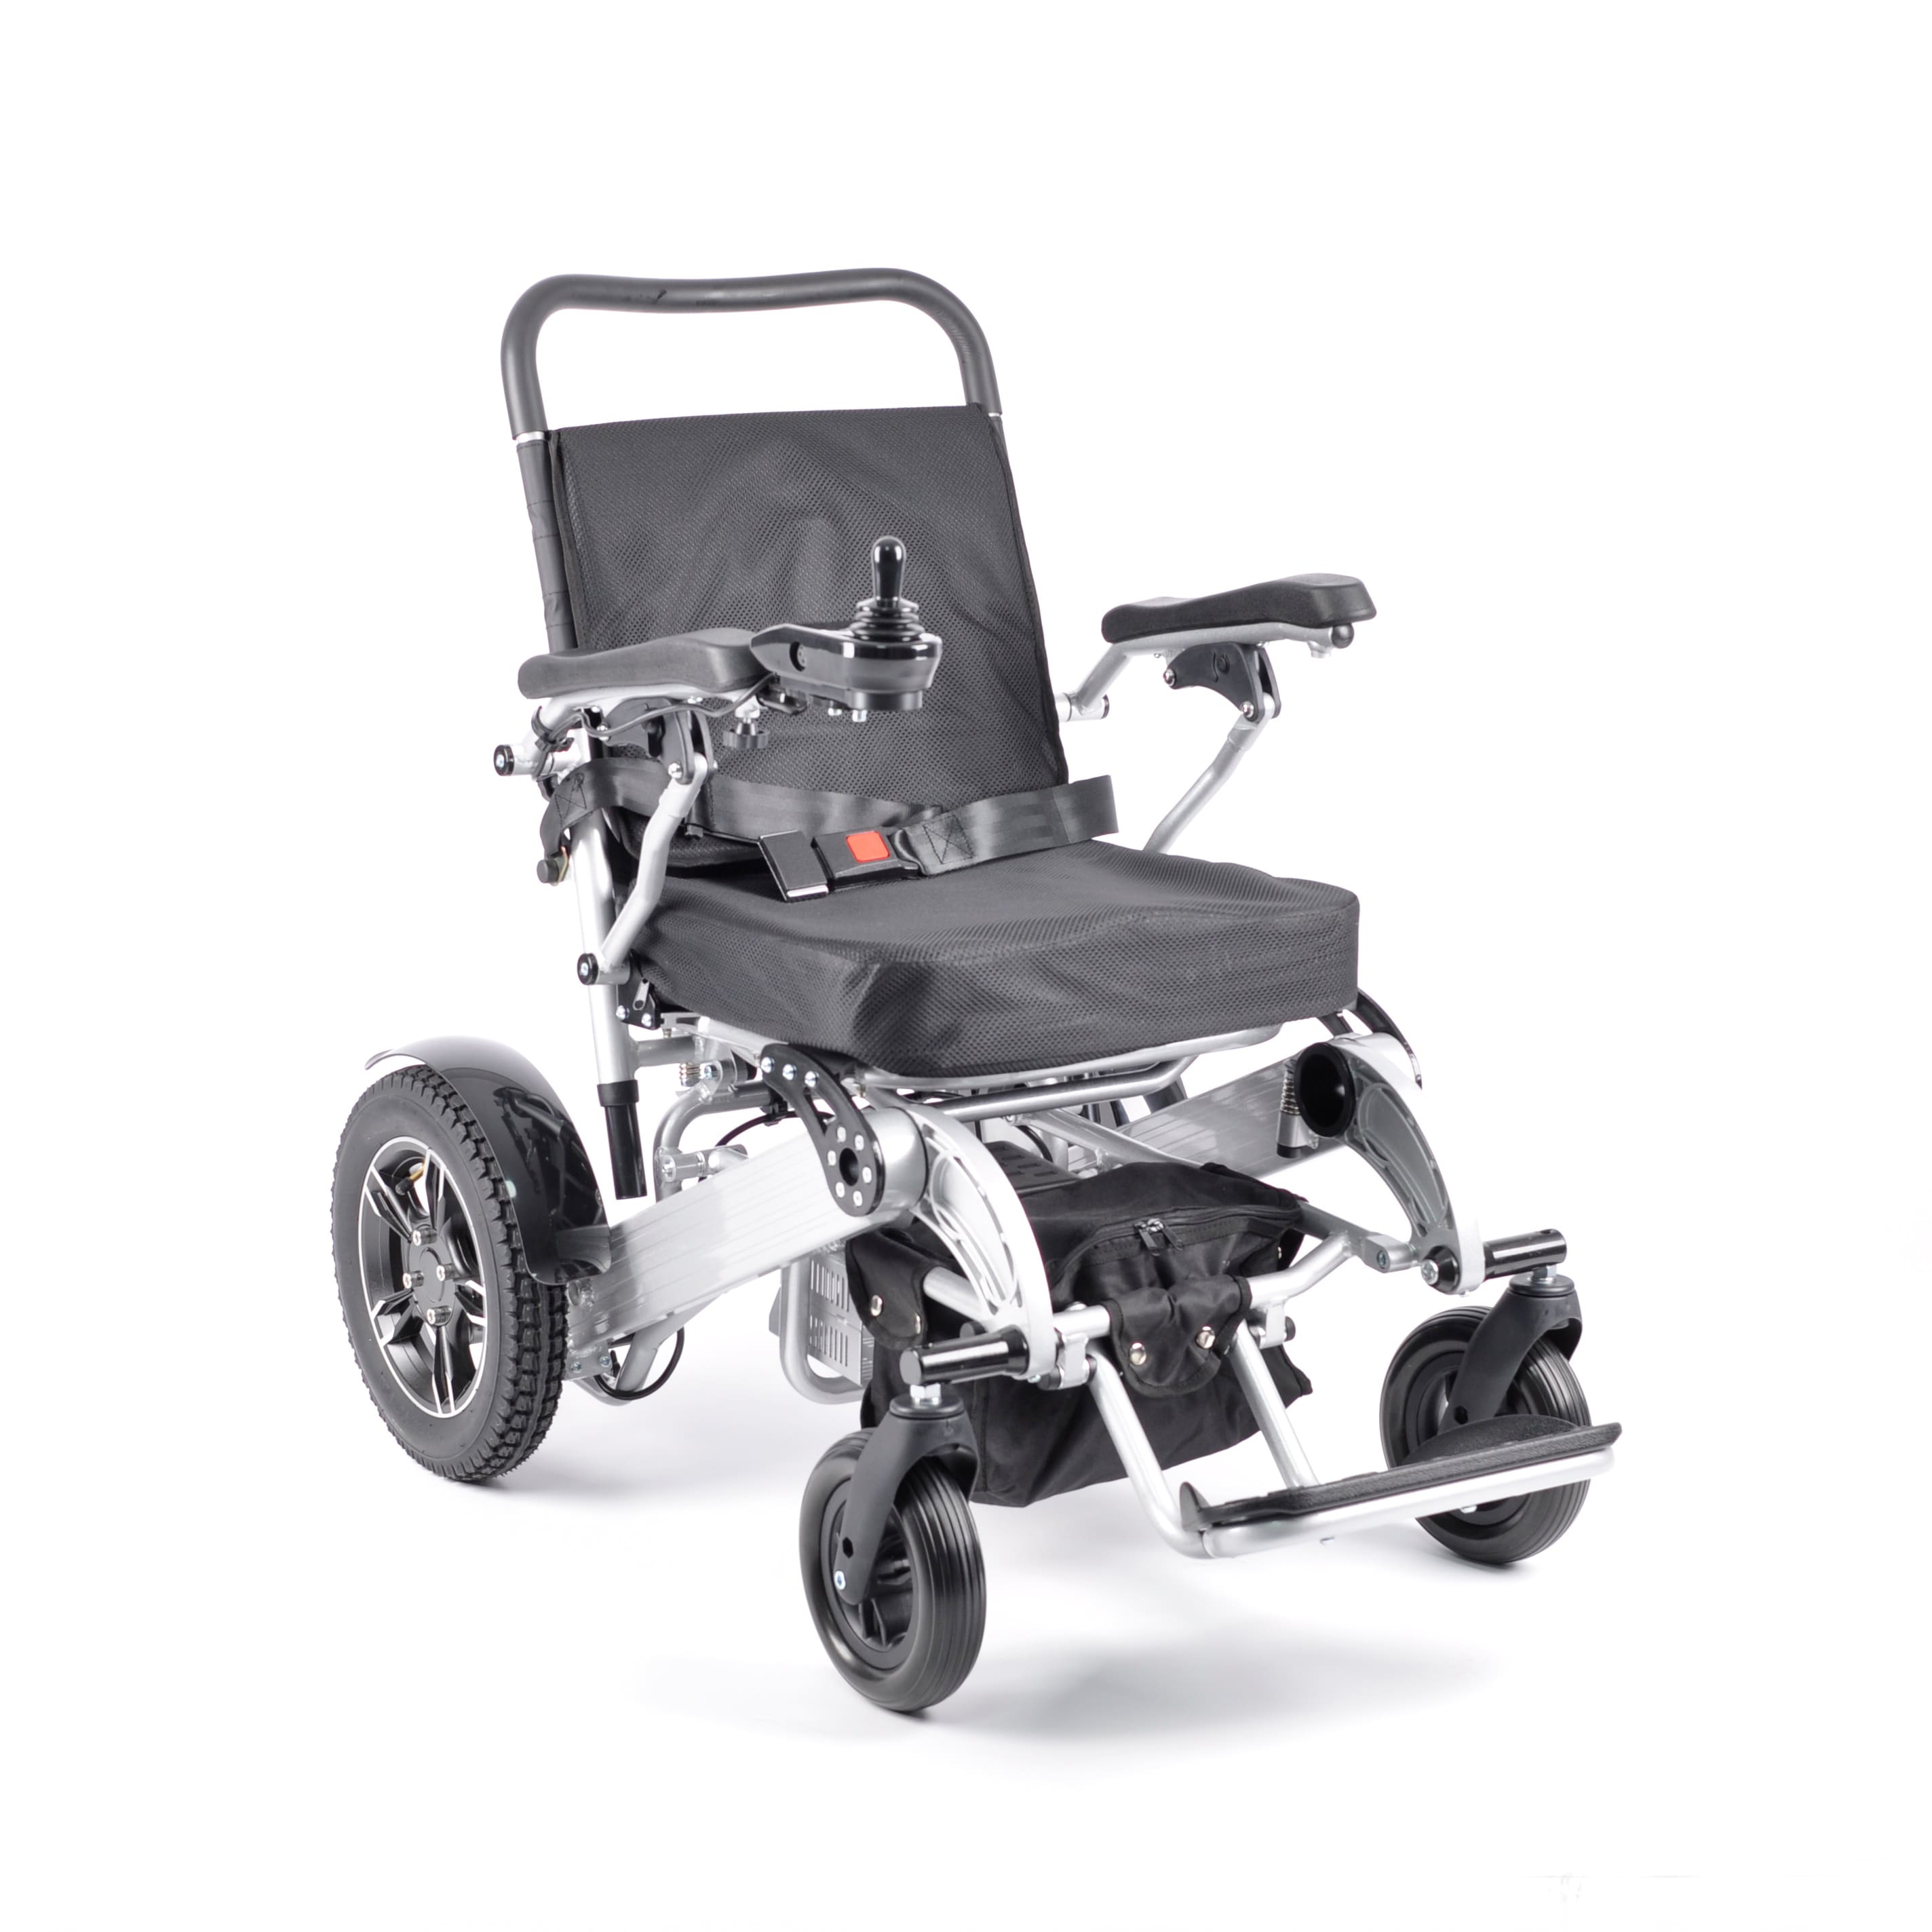 El-kørestol BLIMO Elite XL V2